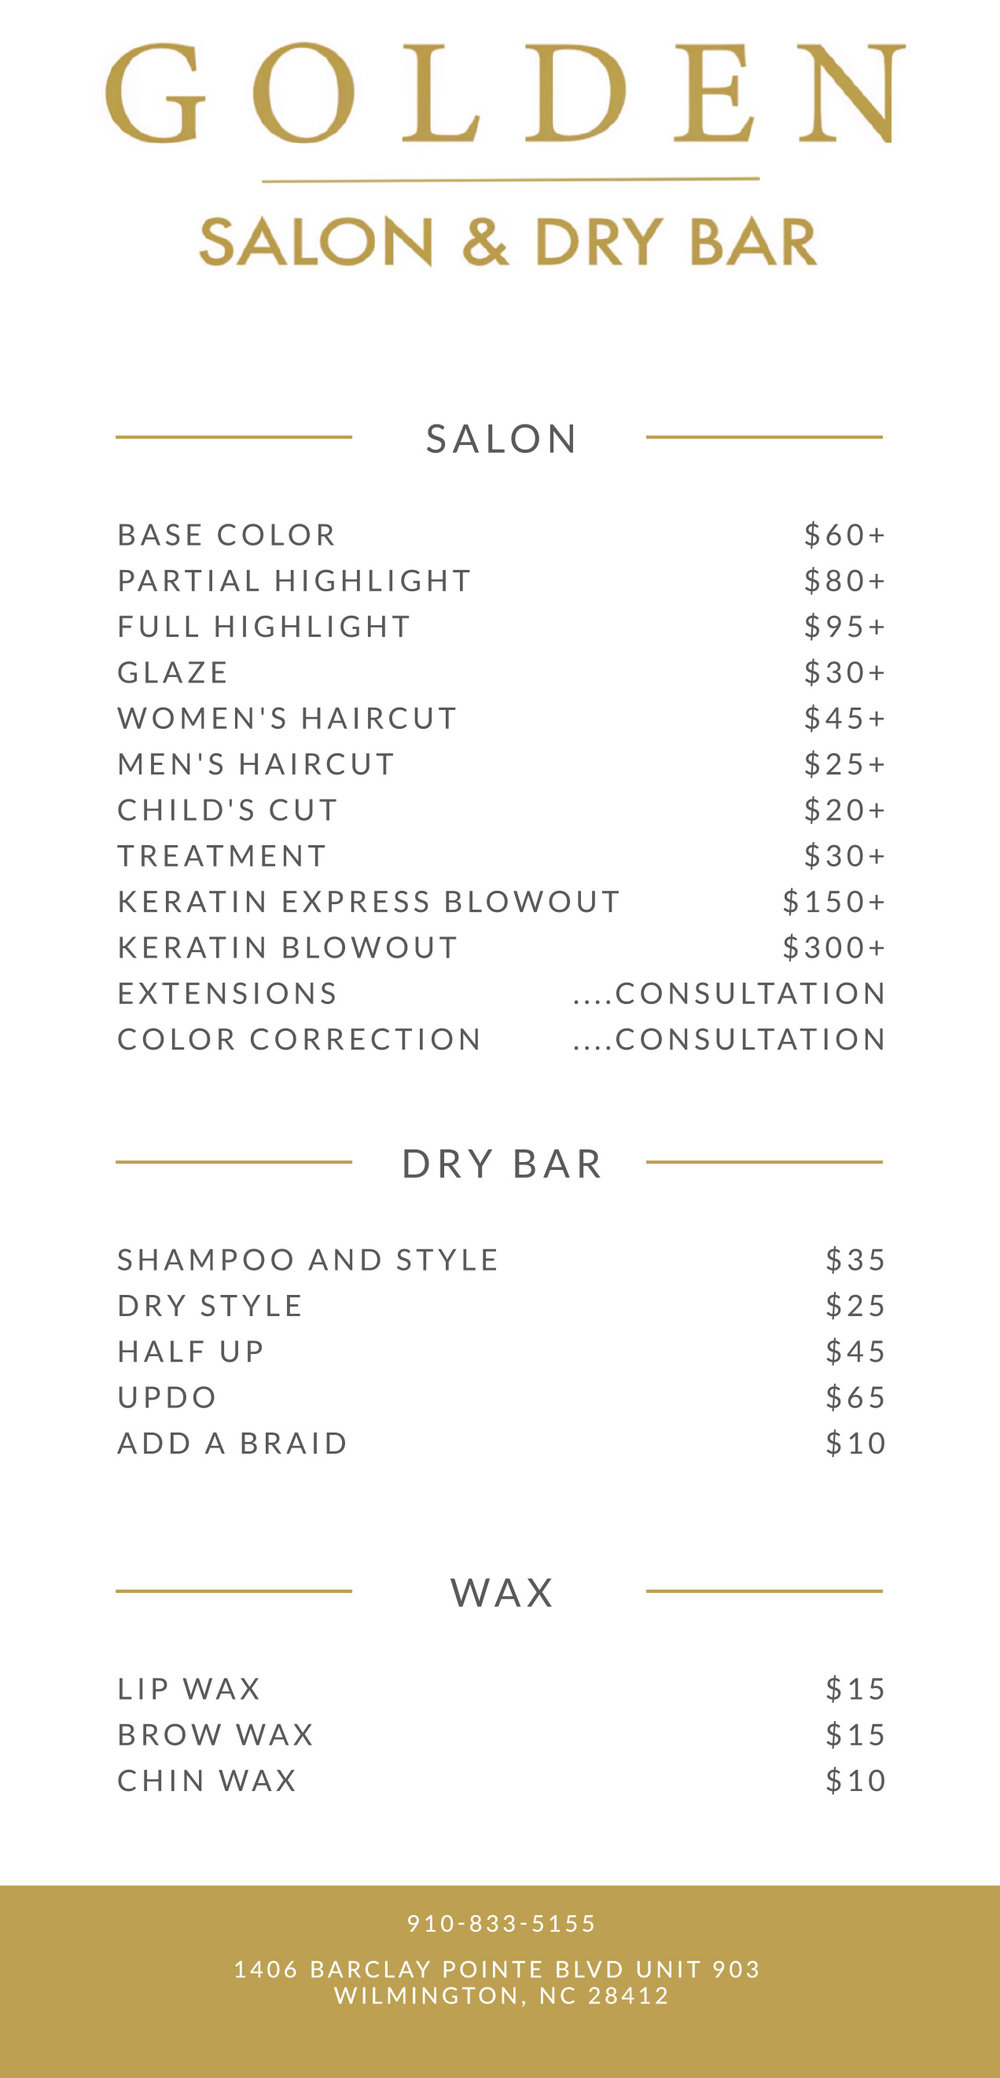 Golden Salon Wilmington, NC Services — Premier Hair Salon and Dry Bar in  Wilmington, NC Golden Salon